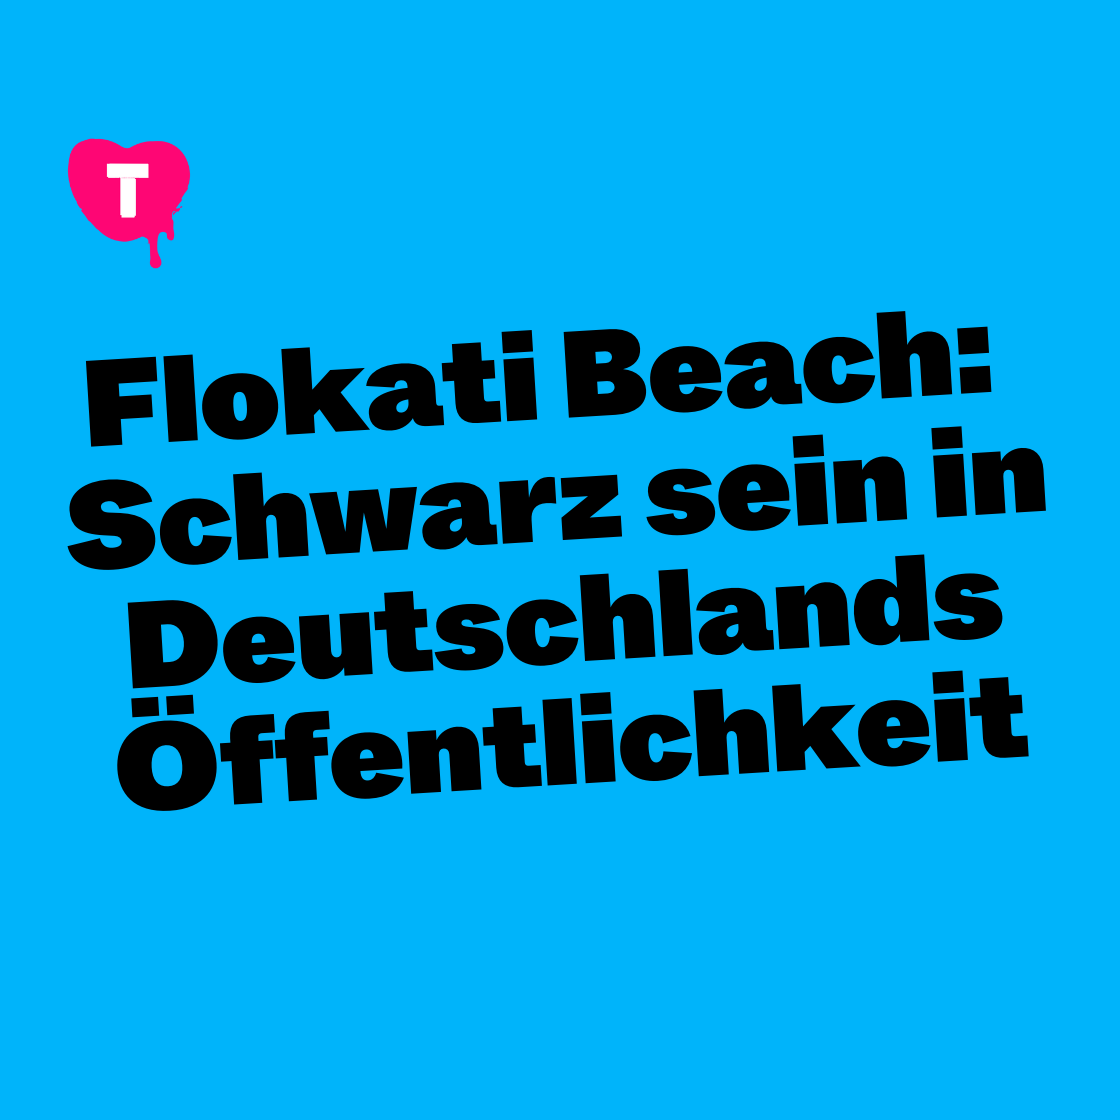 Flokati Beach: Schwarz sein in Deutschlands Öffentlichkeit